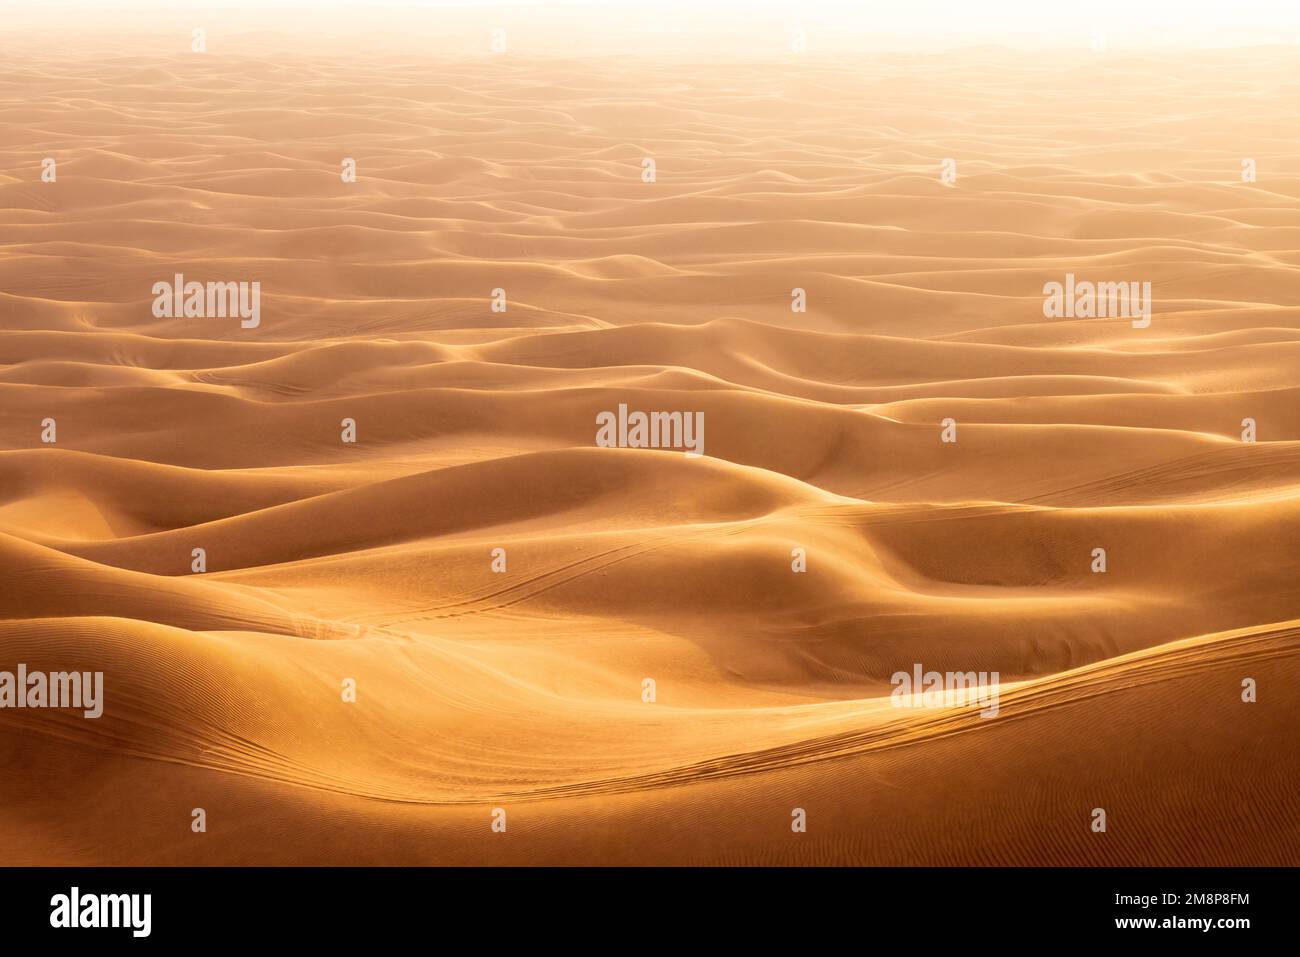 Das rote Deset außerhalb von Dubai, mit einer Düne im Vordergrund und einem Dünen, die sich bis zum Horizont im Hintergrund erstrecken Stockfoto